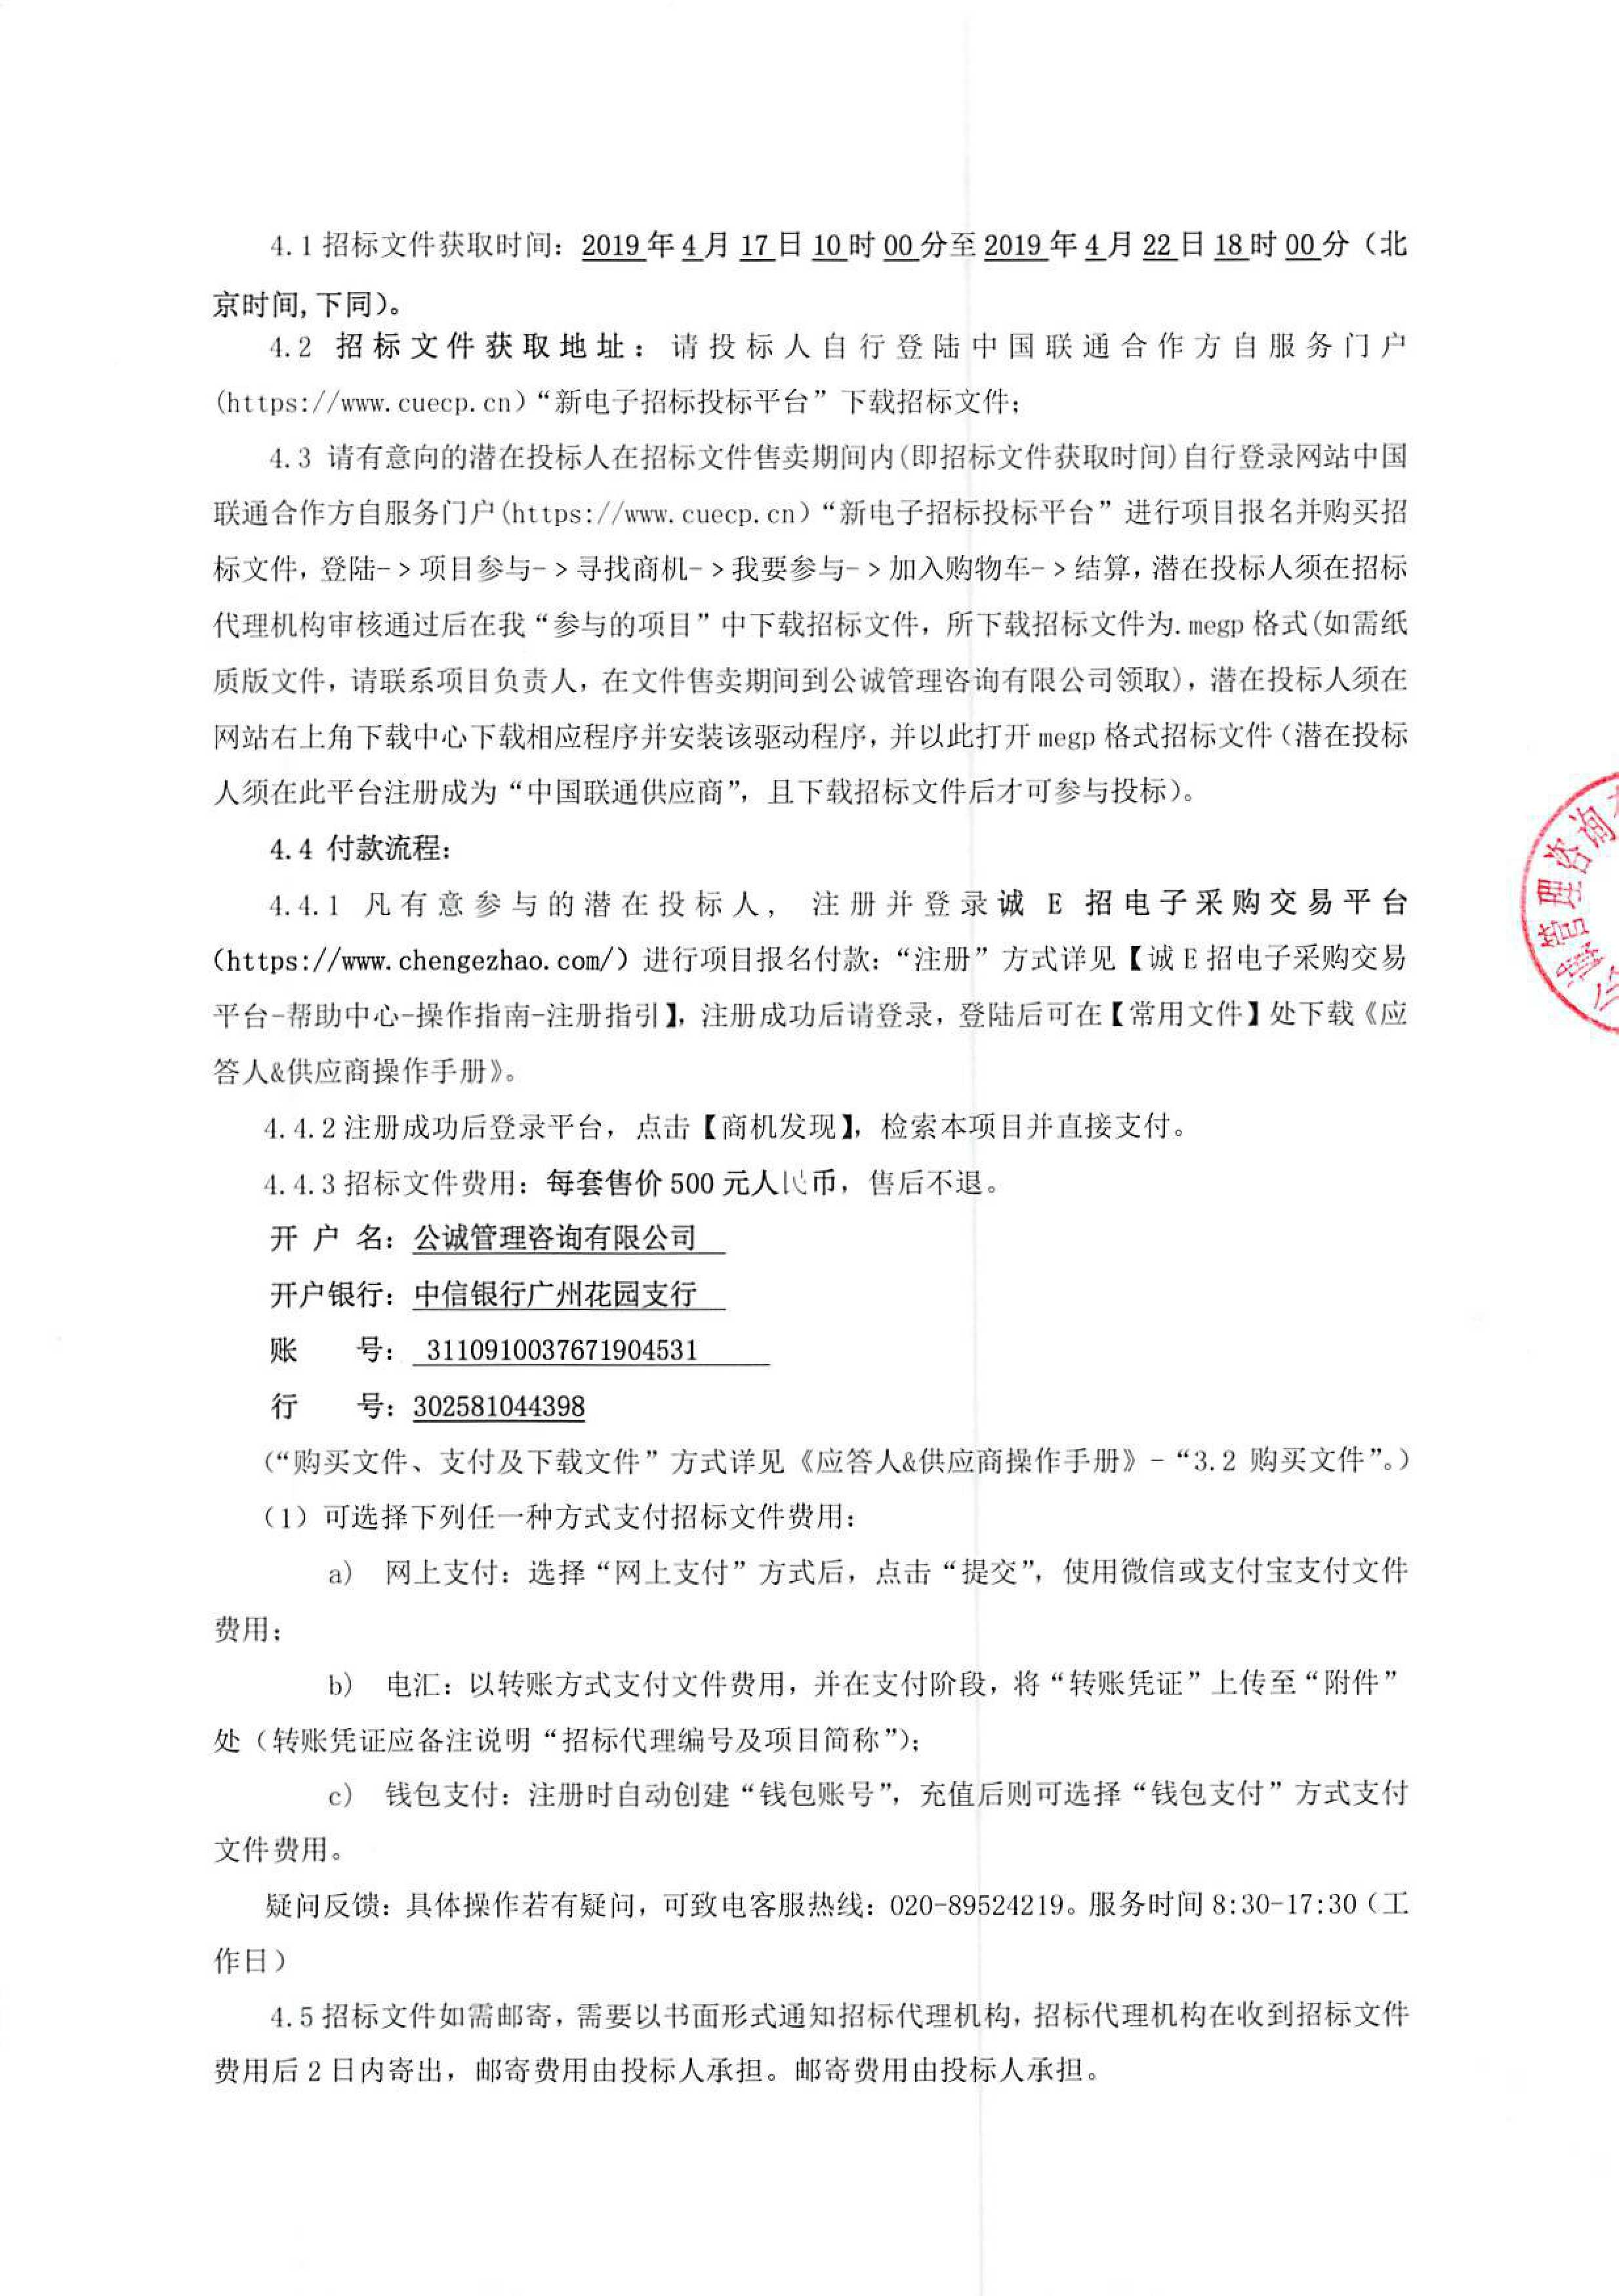 2019年中国联通阿克苏分公司办公楼电梯采购